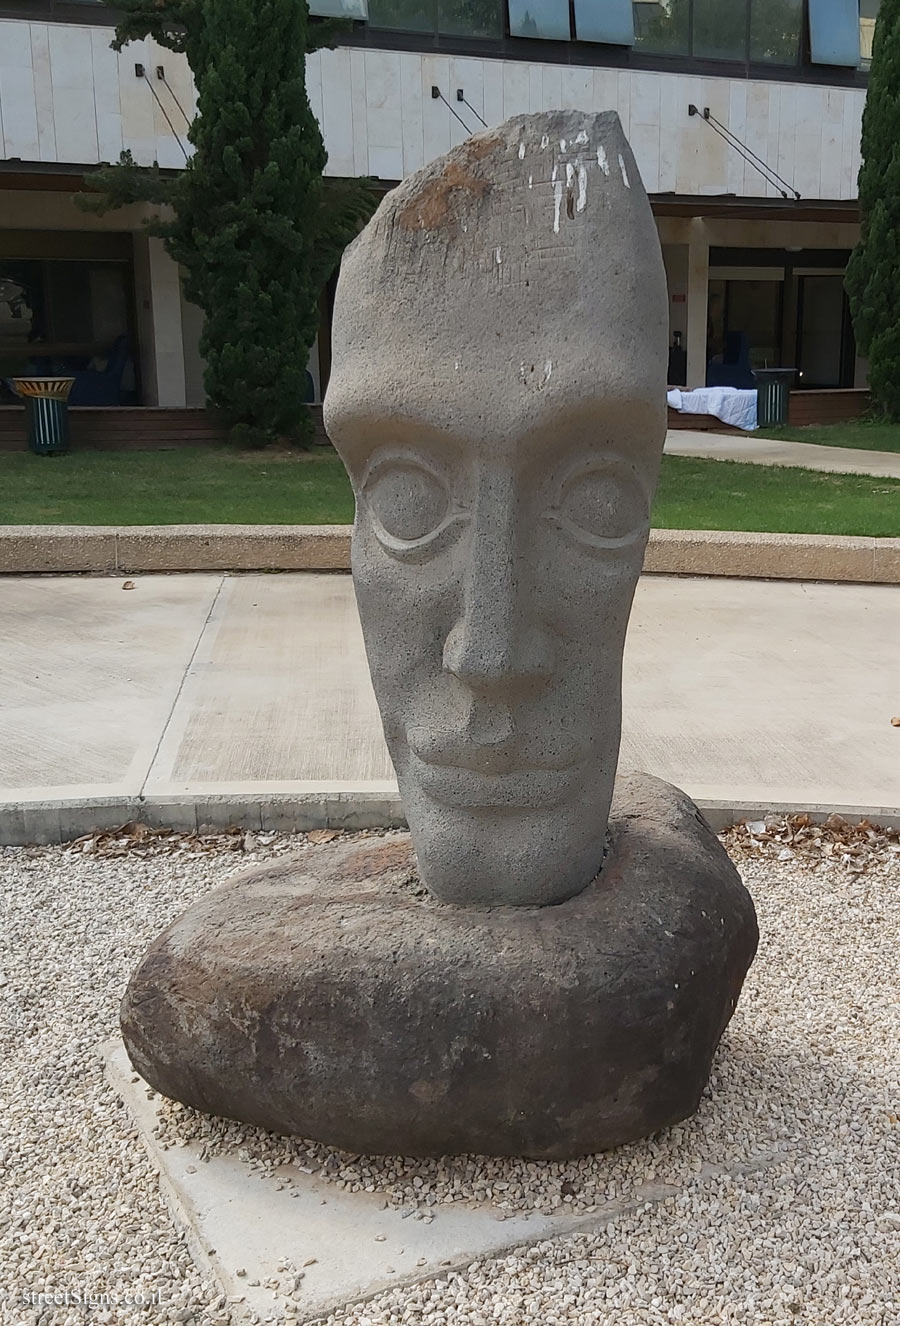 "No Title" David Fine outdoor sculpture - The Topor sculpture garden at Sheba Hospital in Tel Hashomer